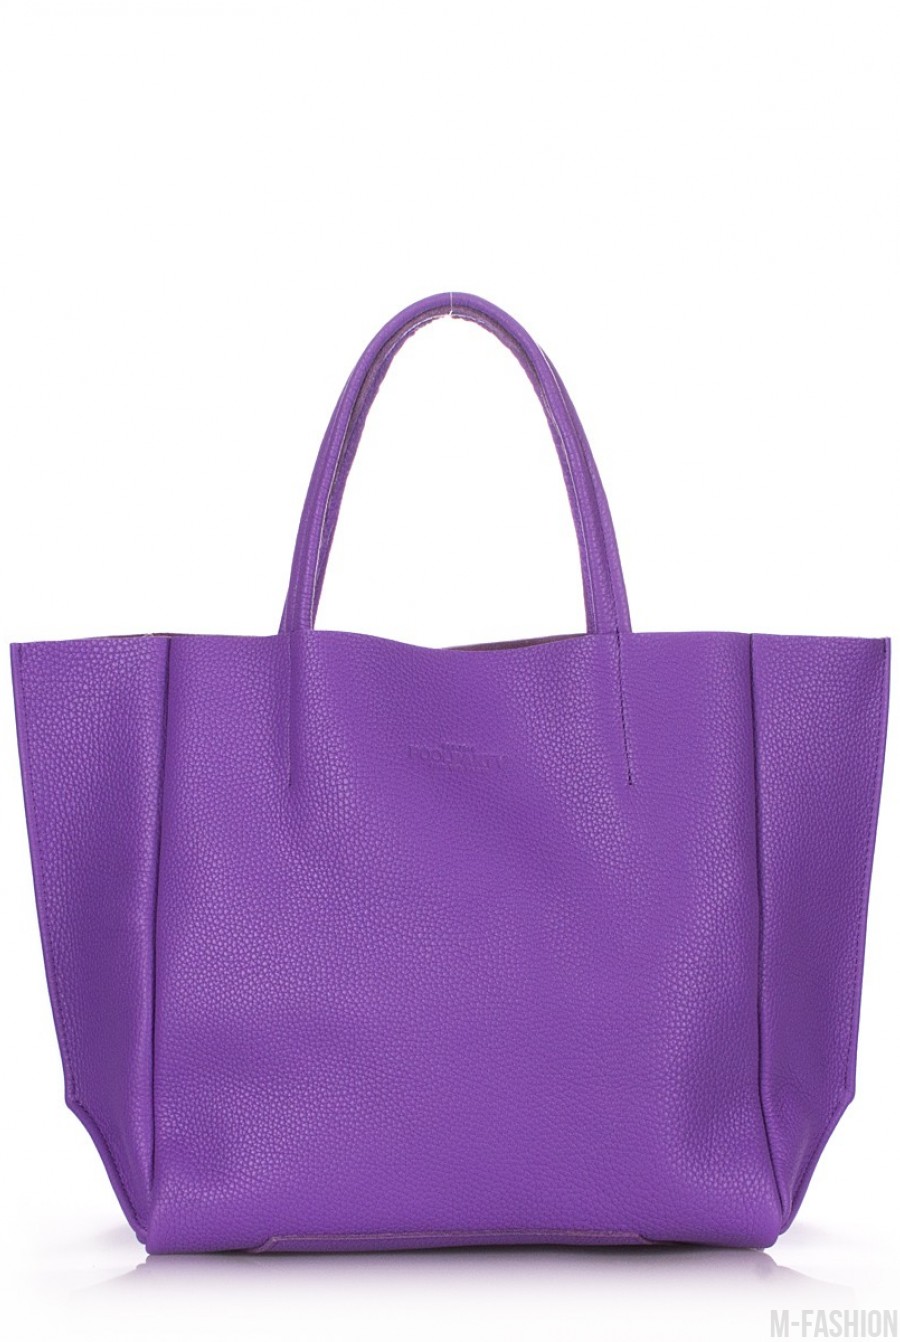 Кожаная фиолетовая сумка Soho классического дизайна - Фото 1